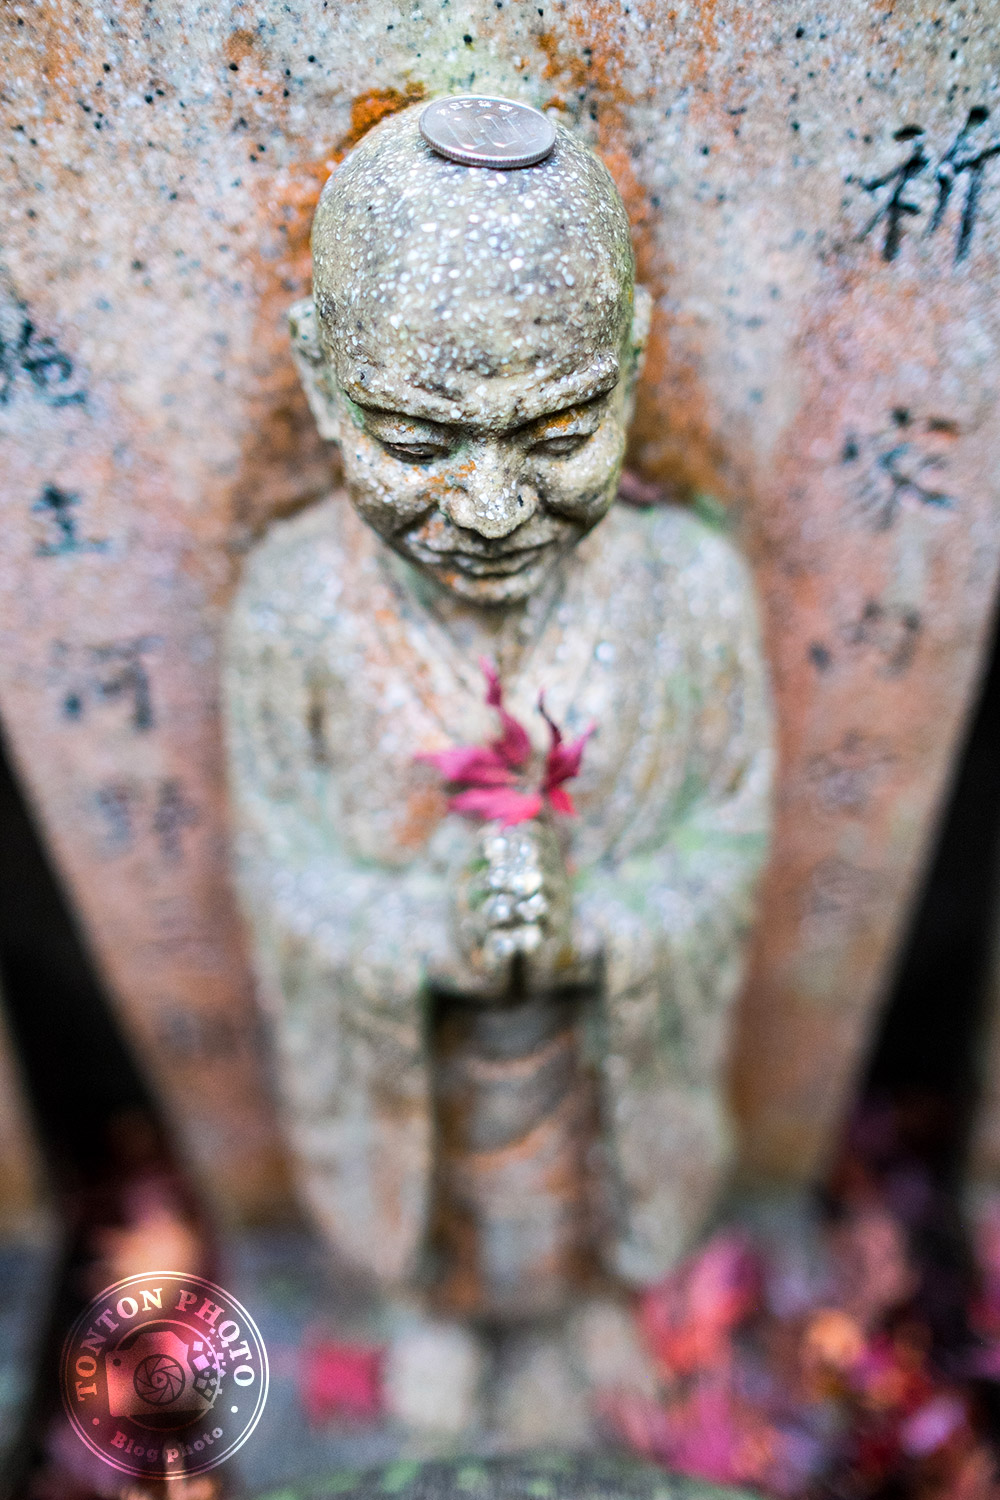 Offrande sur le crâne d'une des centaines de statues bouddhiques du temple Daisho-In. Île de Miyajima, Japon © Clément Racineux / Tonton Photo